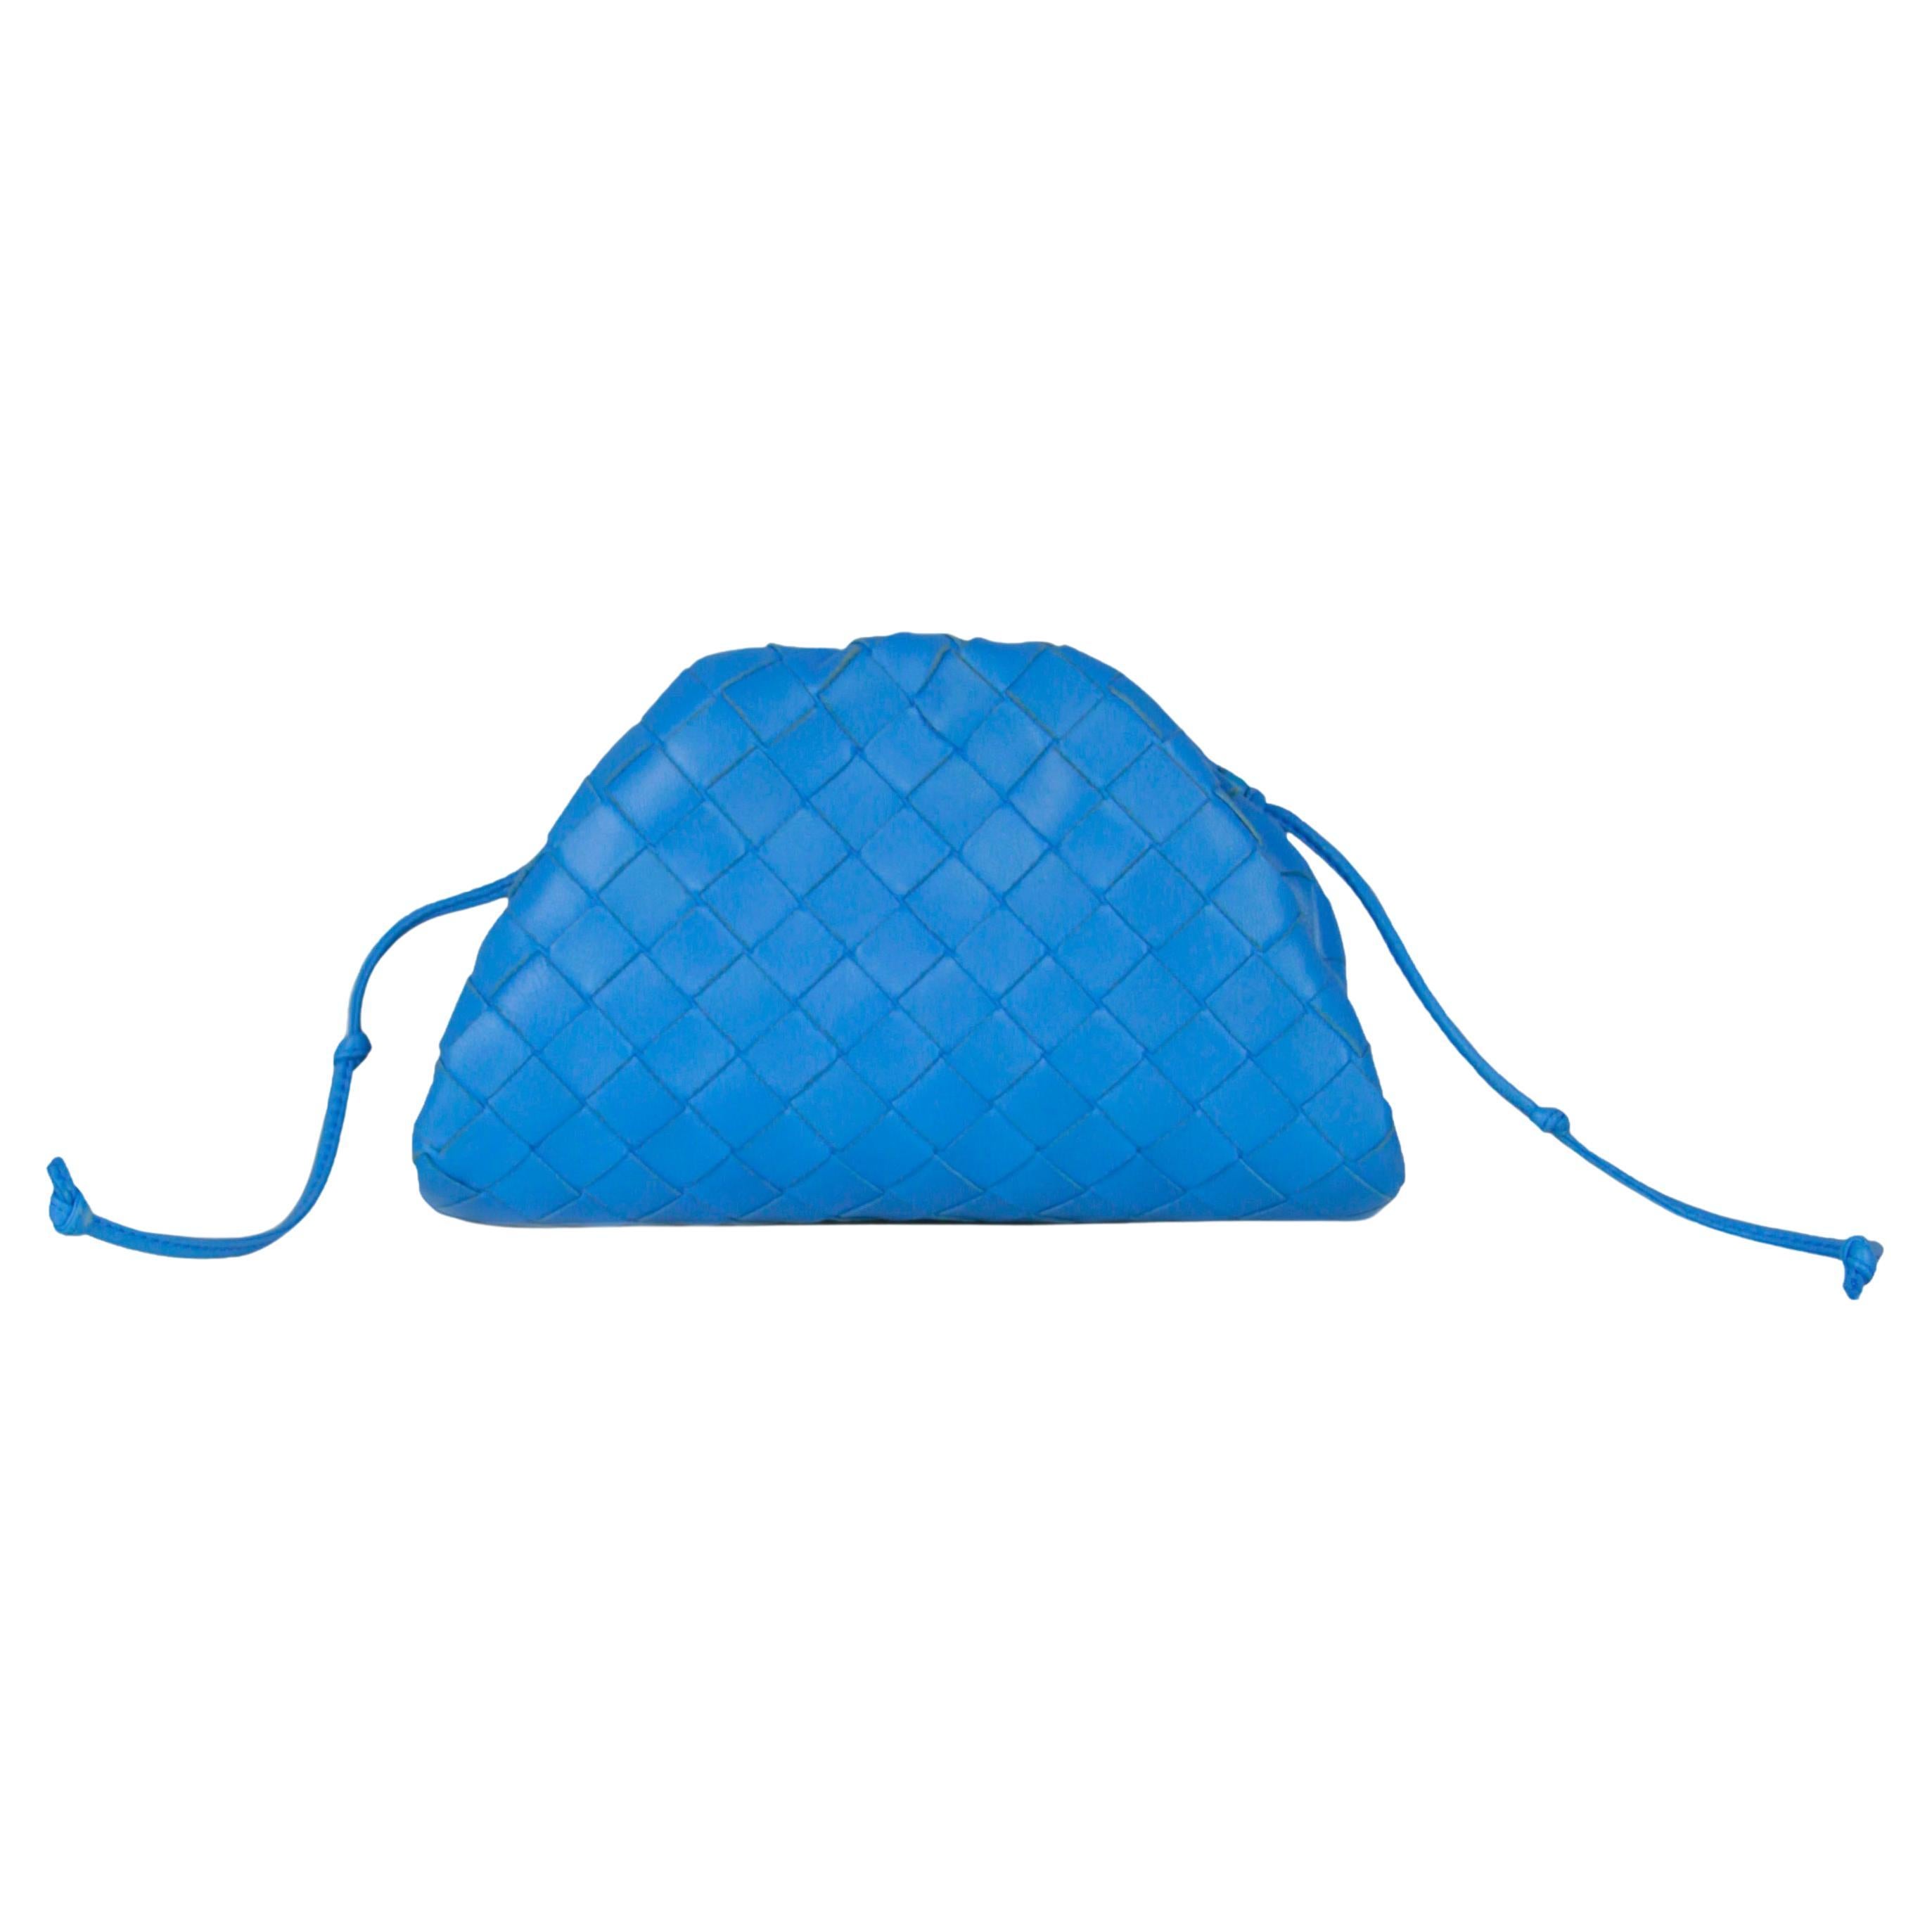 Pouch Mini Intrecciato Leather Clutch in Blue - Bottega Veneta